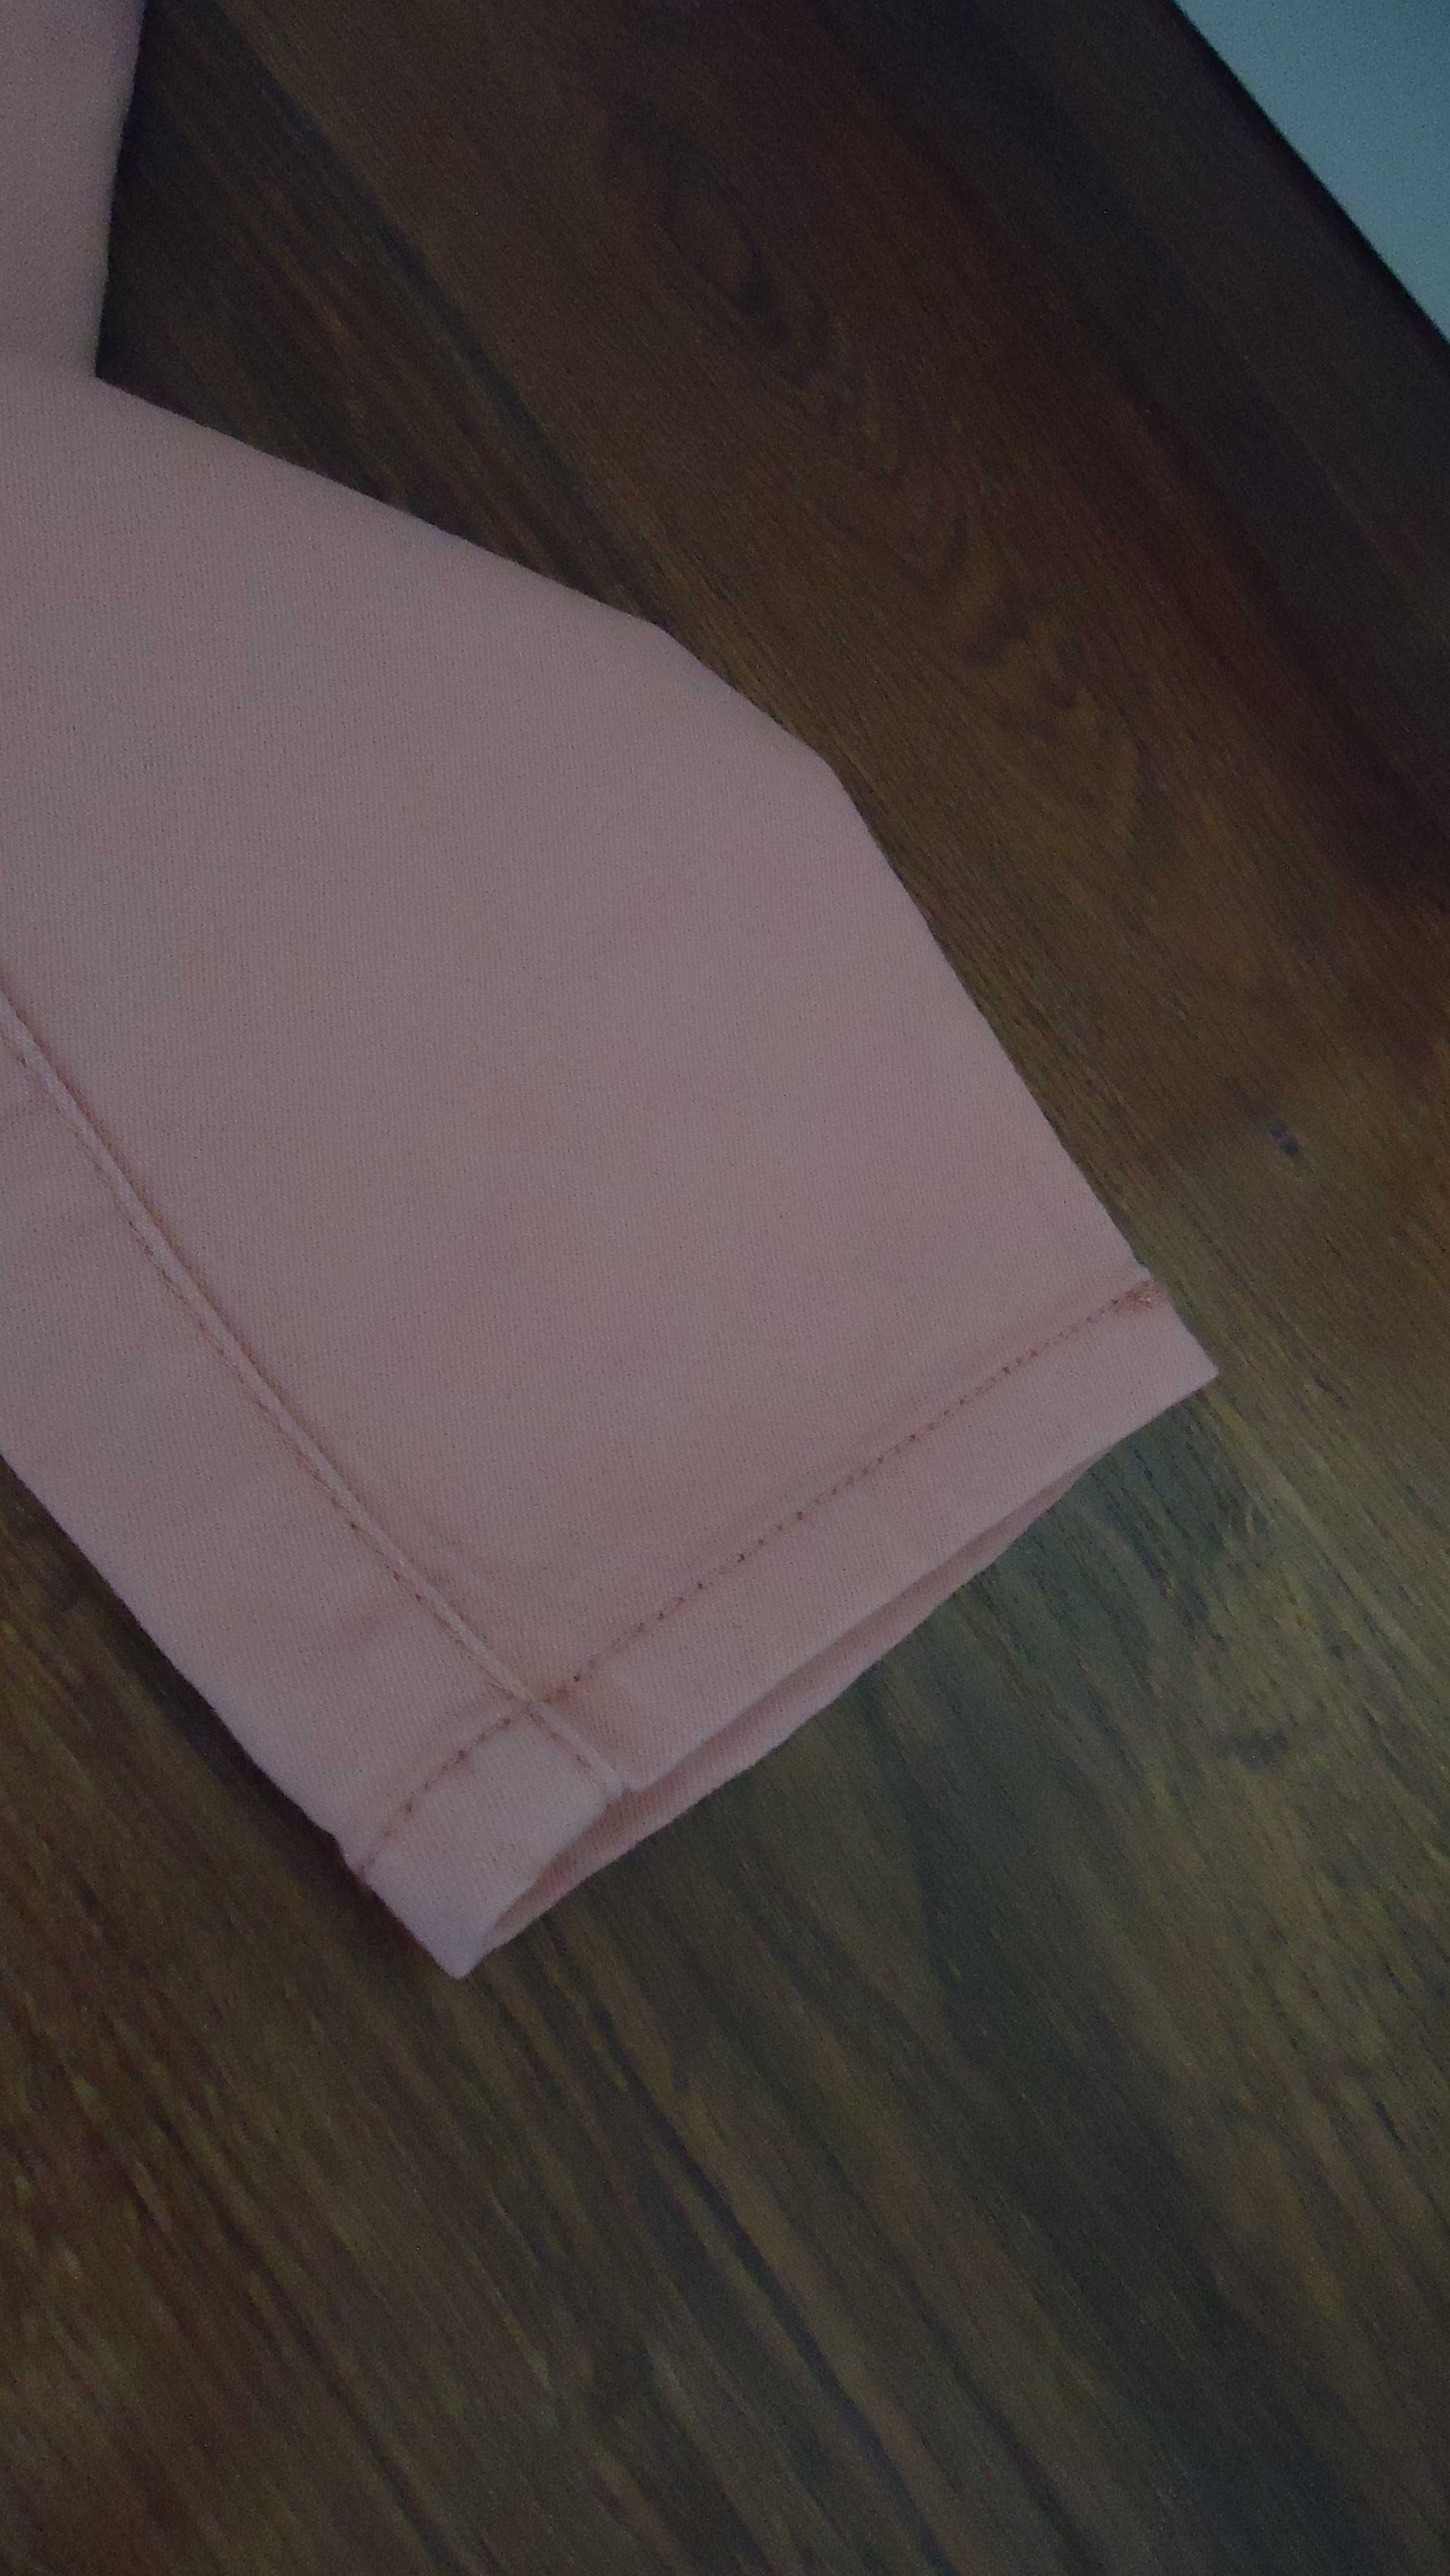 r.XS 34 dżinsowe legginsy różowe jegginsy różowe spodnie dżinoswe